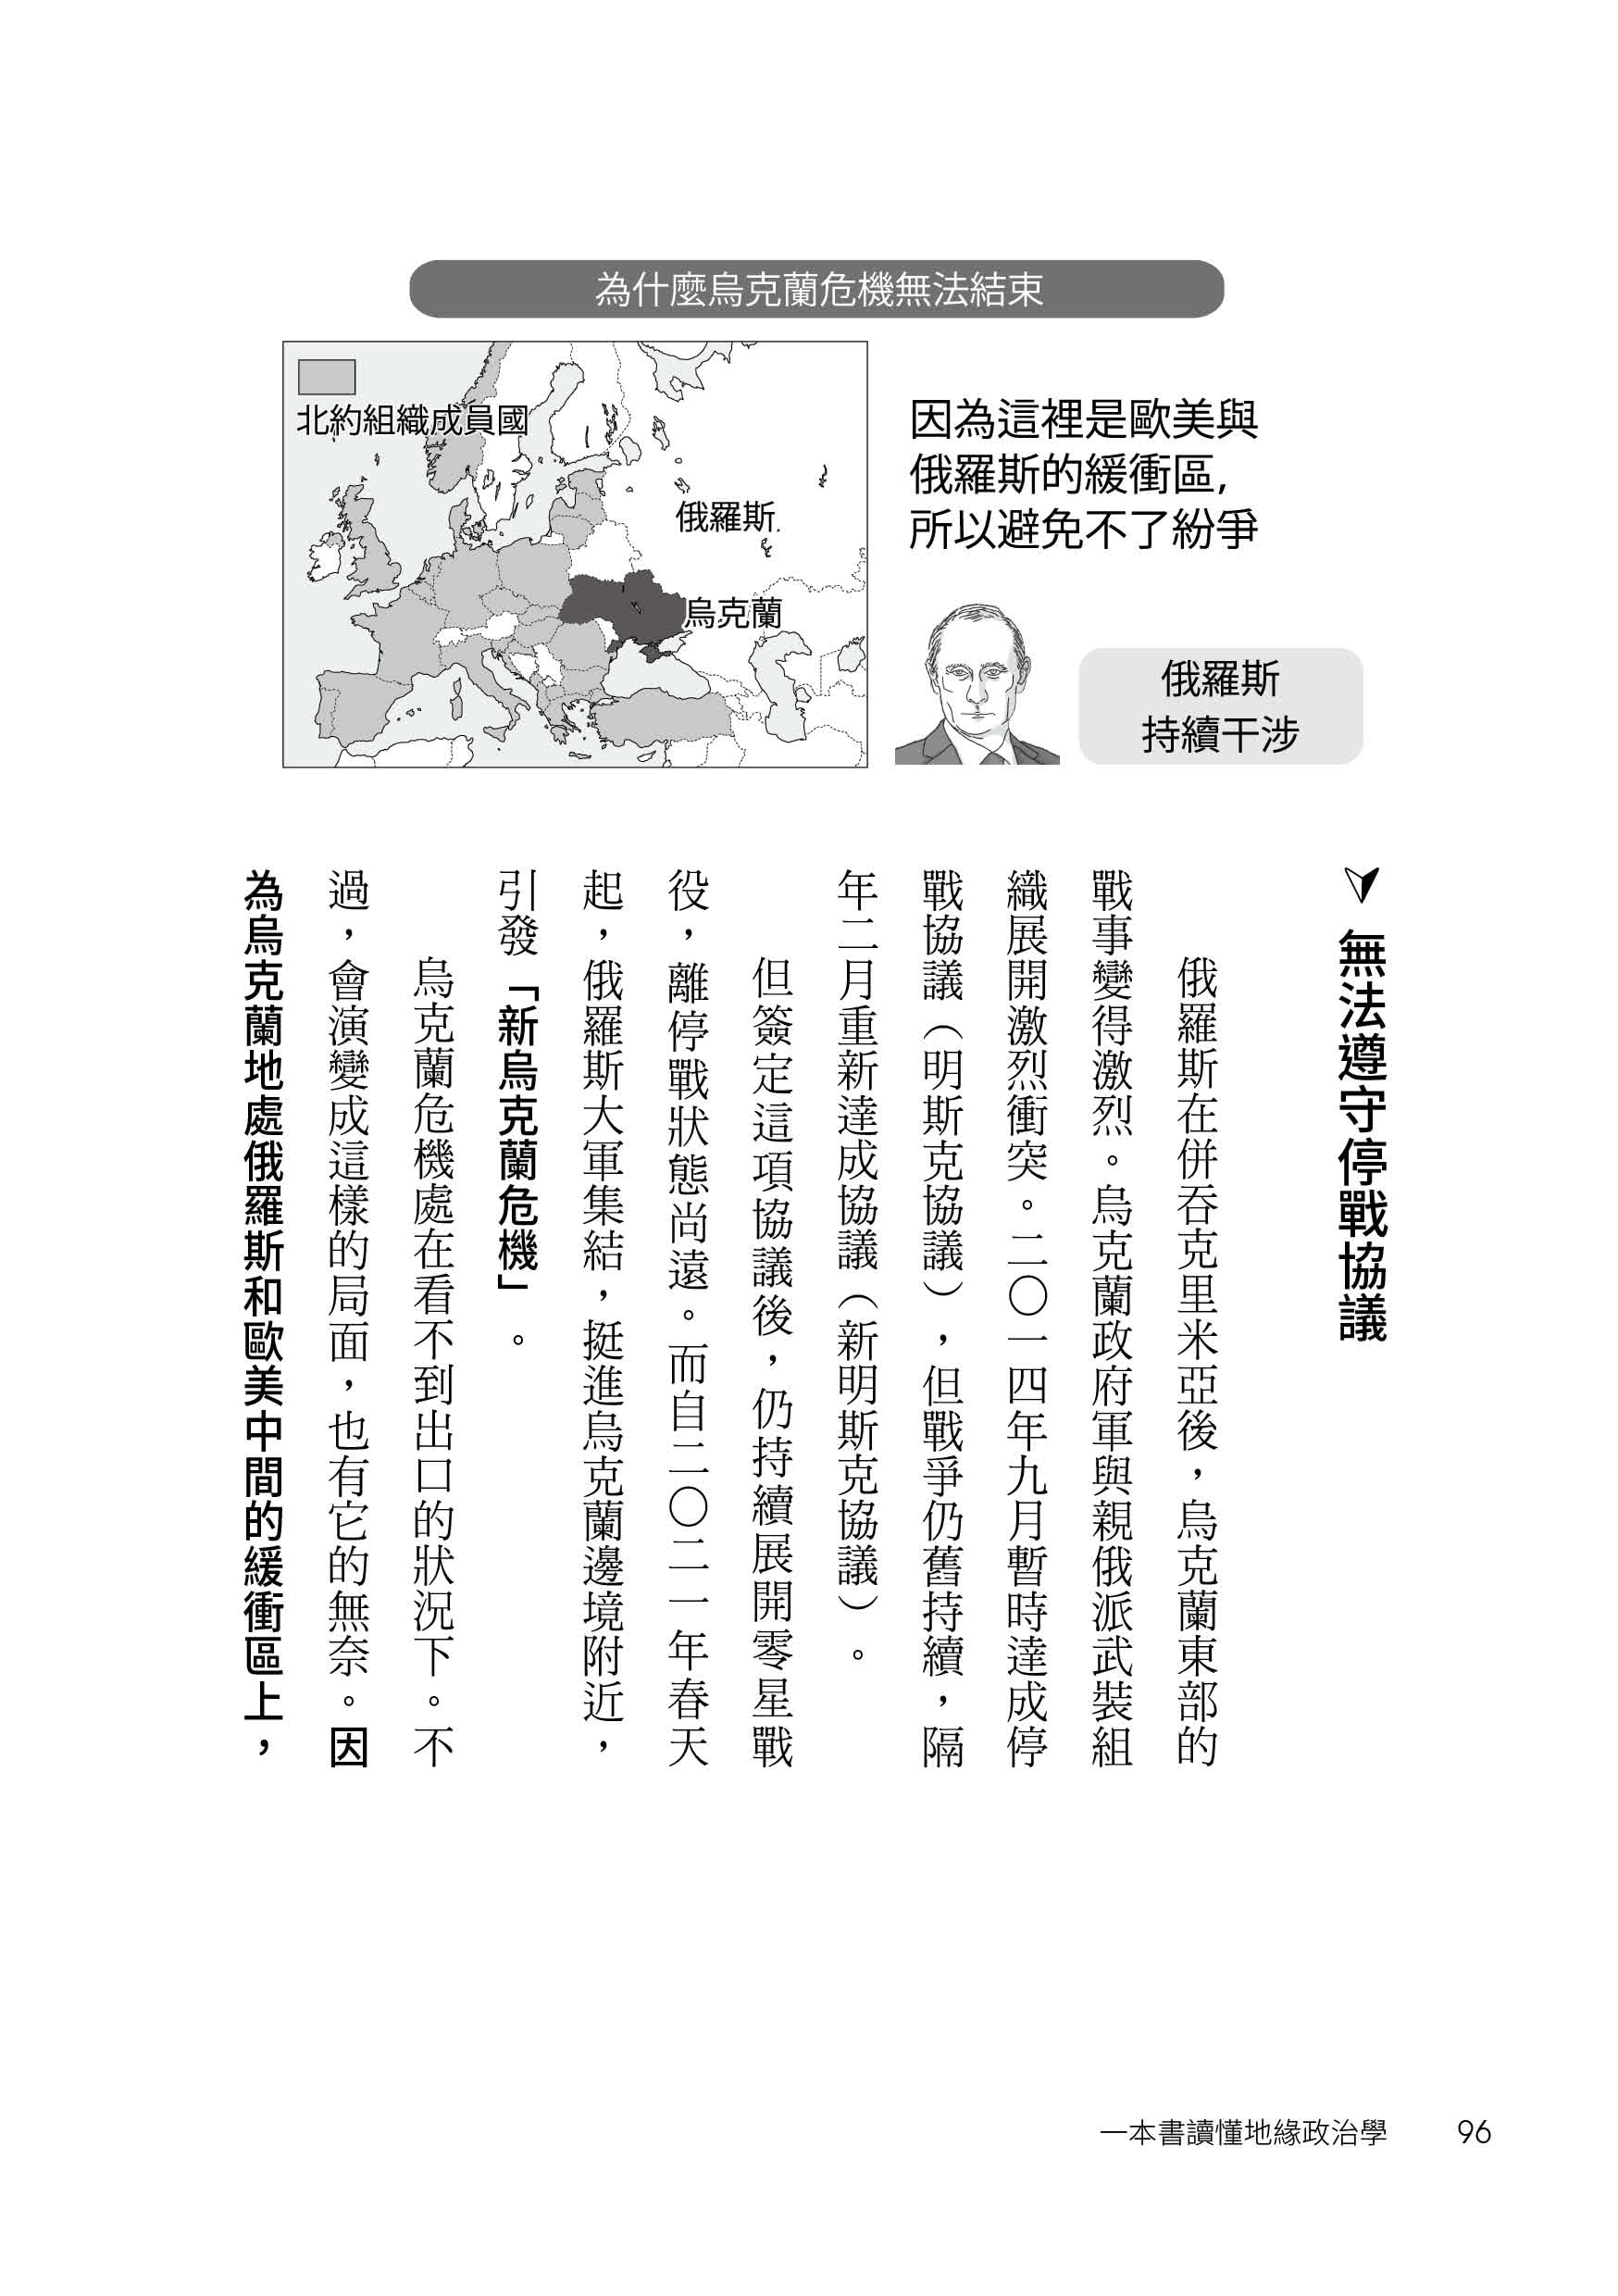 一本書讀懂地緣政治學：台灣面臨中國空前威脅？烏俄戰爭為何無法結束？50張國際形勢圖解╳零基礎淺顯解說